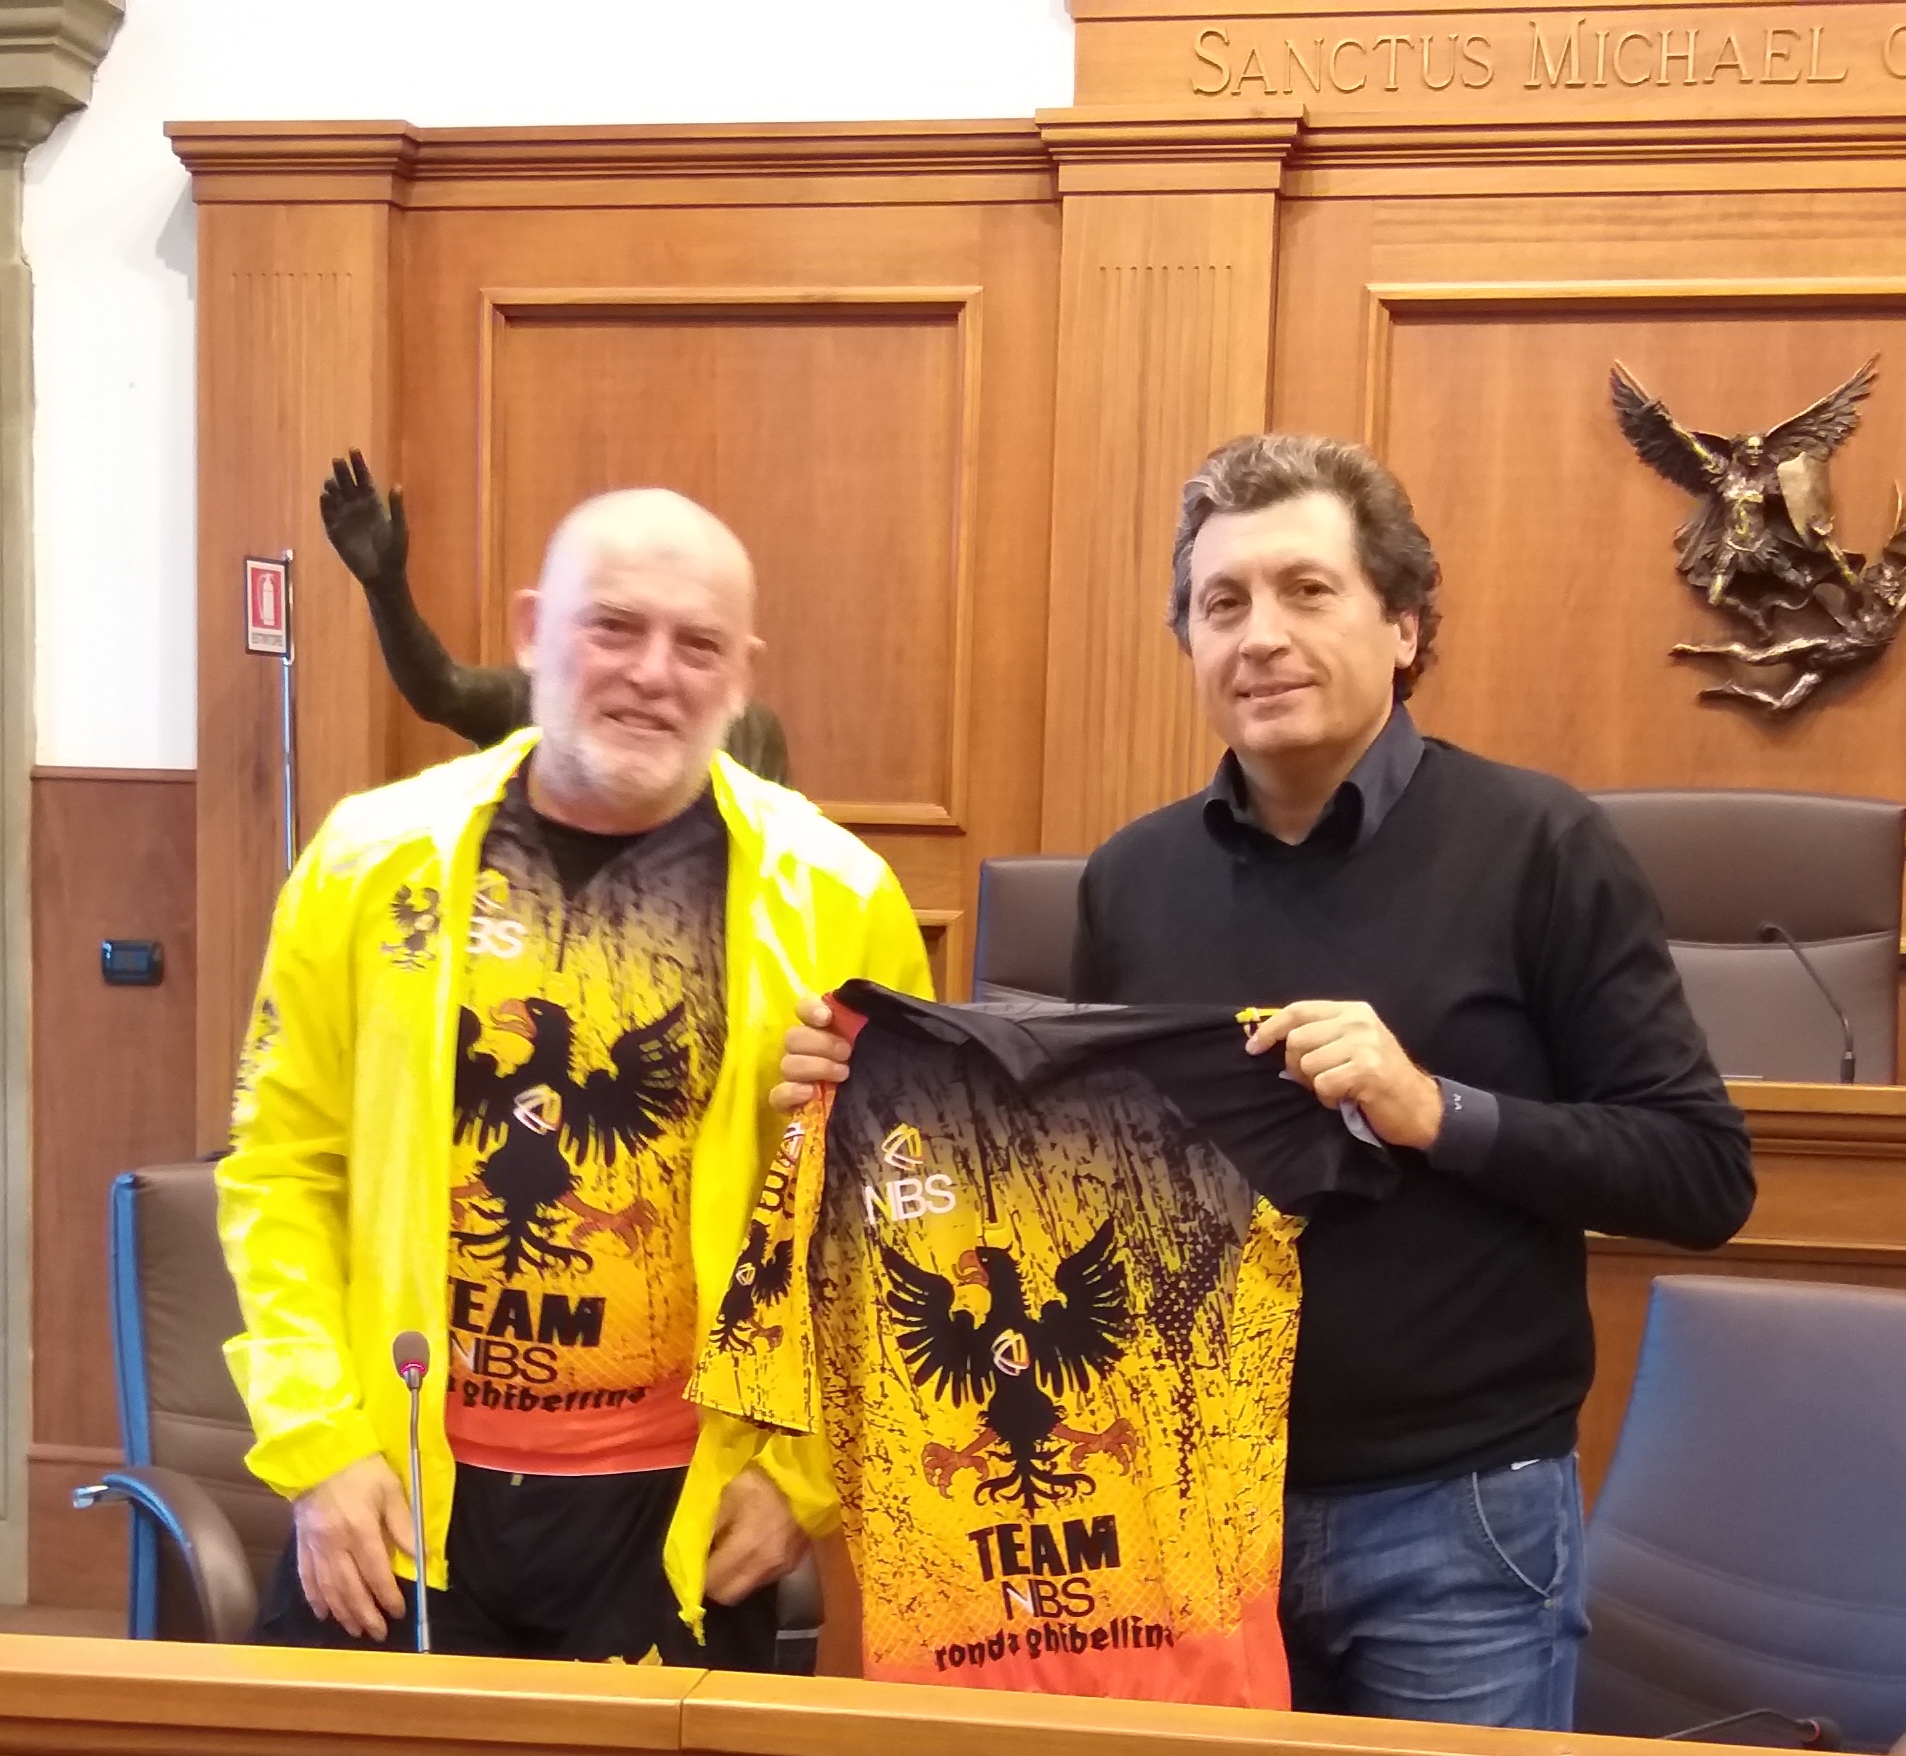 Consegnata al sindaco Mario Agnelli la nuova maglia della Ronda Ghibellina